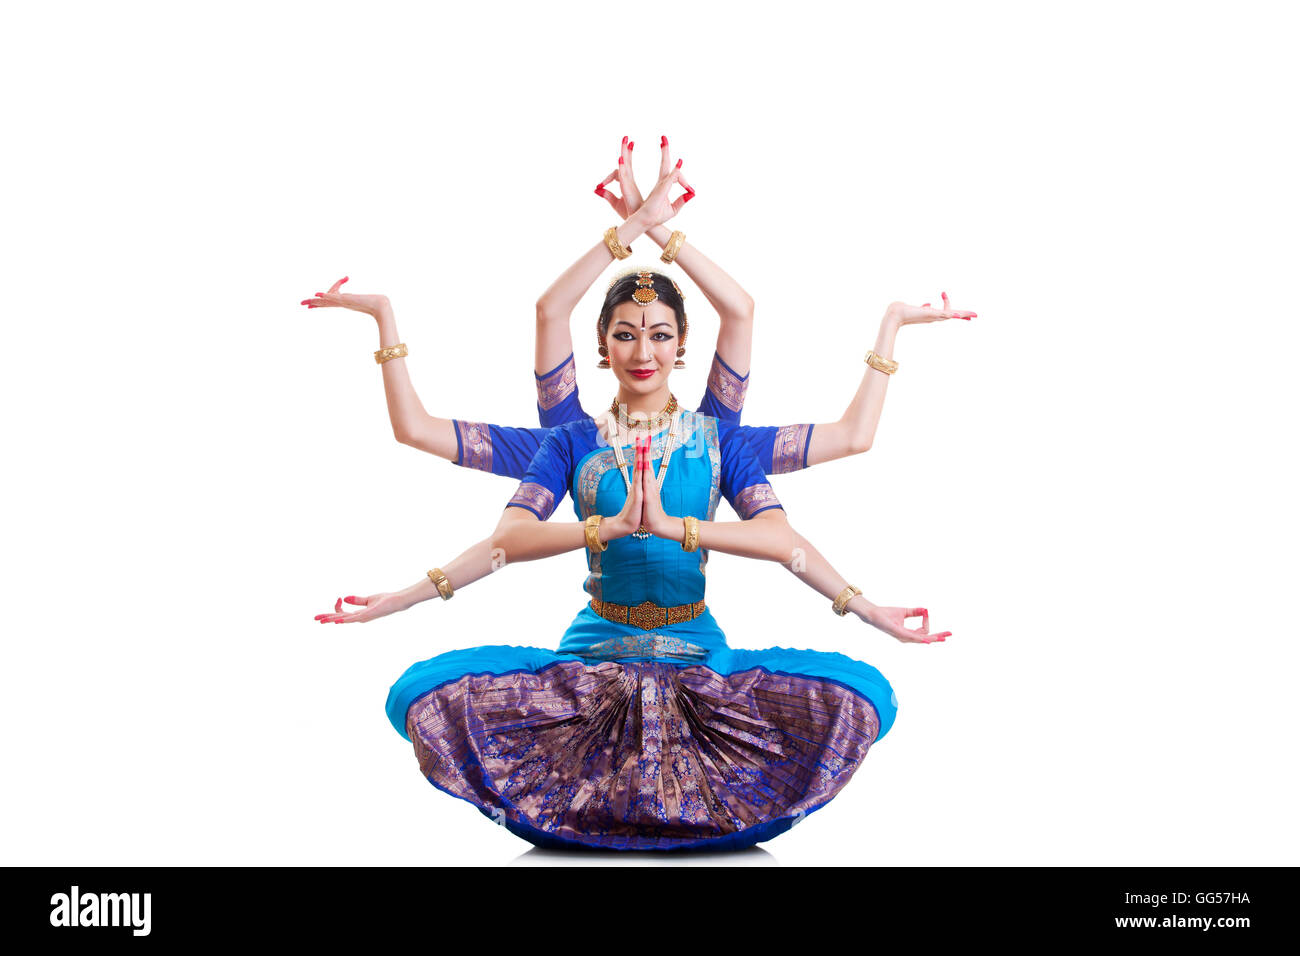 Portrait de danseuse de bharatanatyam avec plusieurs mudras over white background Banque D'Images